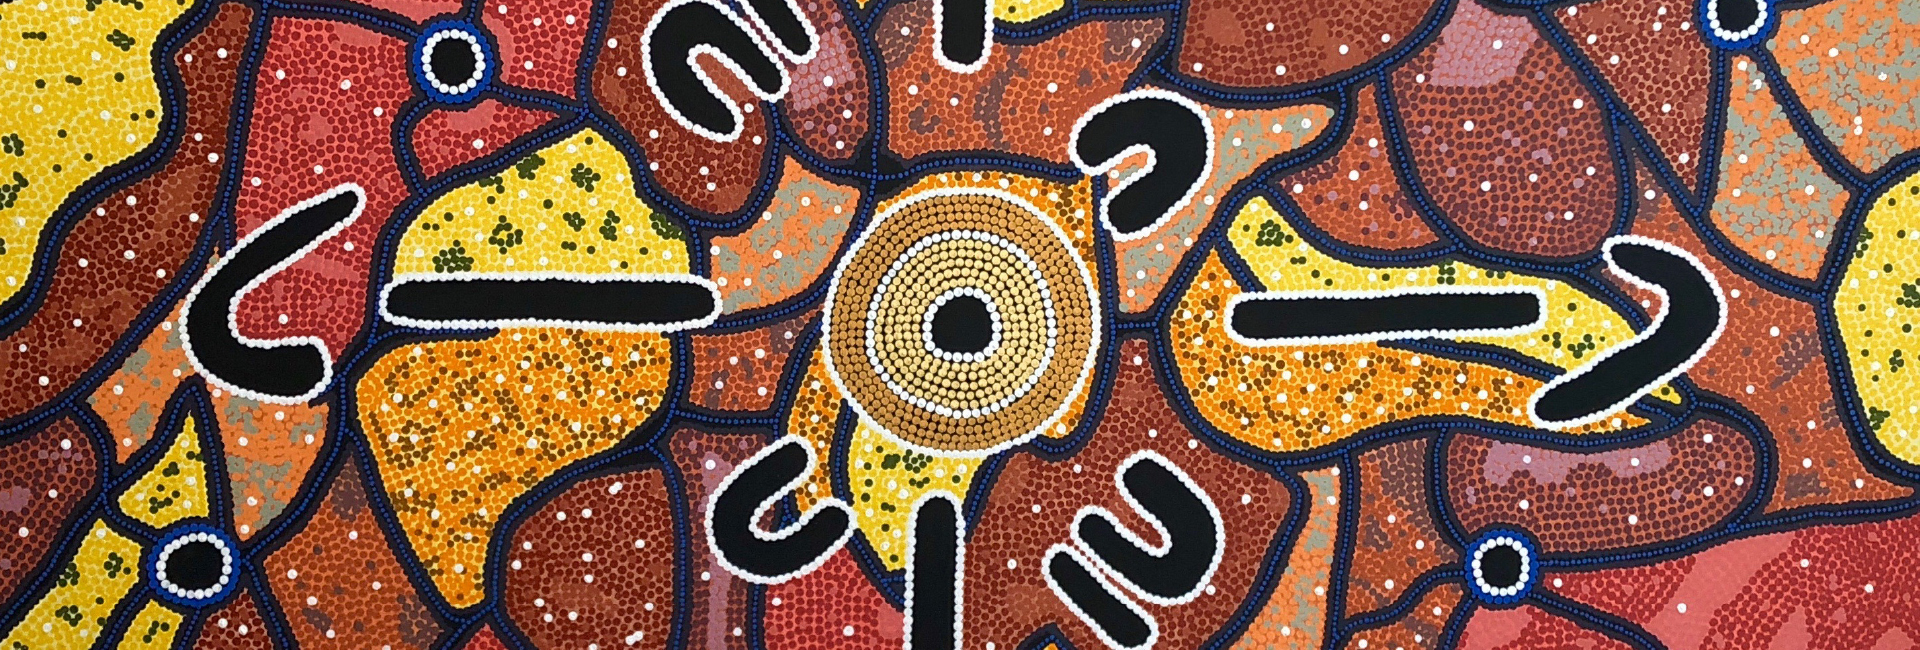 8月11日から15日に東京で開催されるオーストラリアの先住民アーティスト、ダニエル・マクドナルドの個展で販売される Turn Left: Finding My WayとSunset